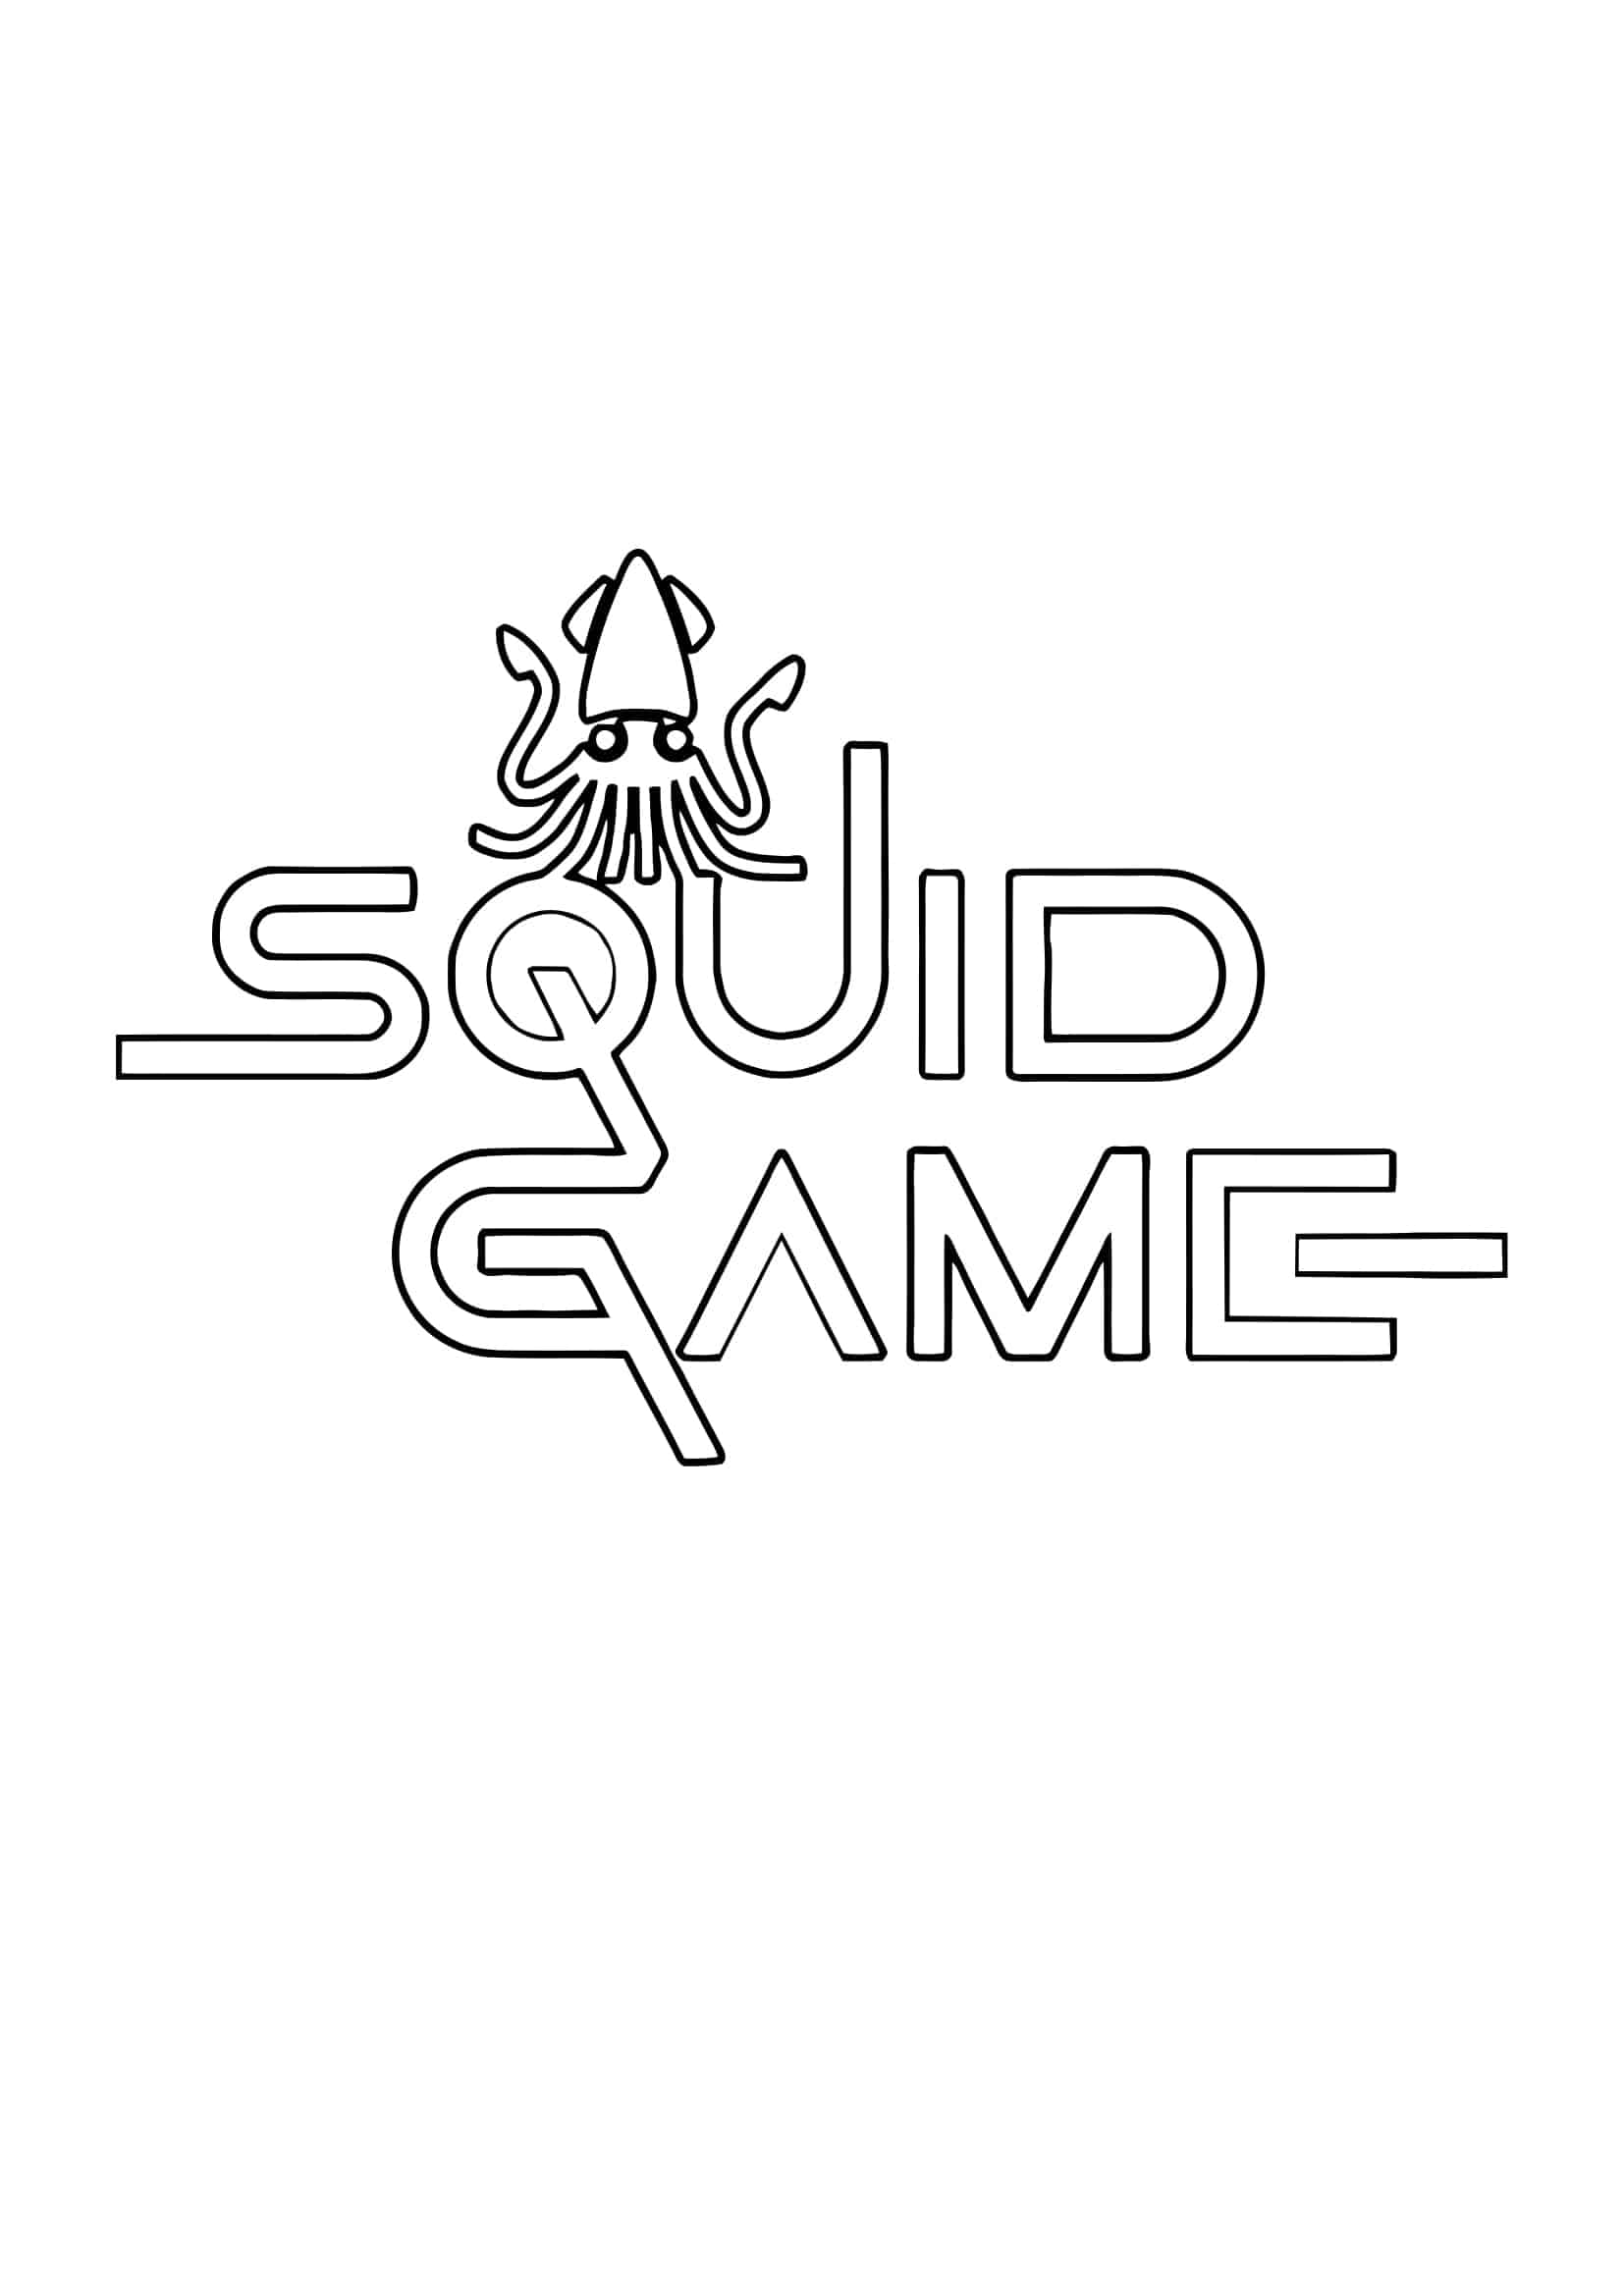 Squid game ausmalbilder 04